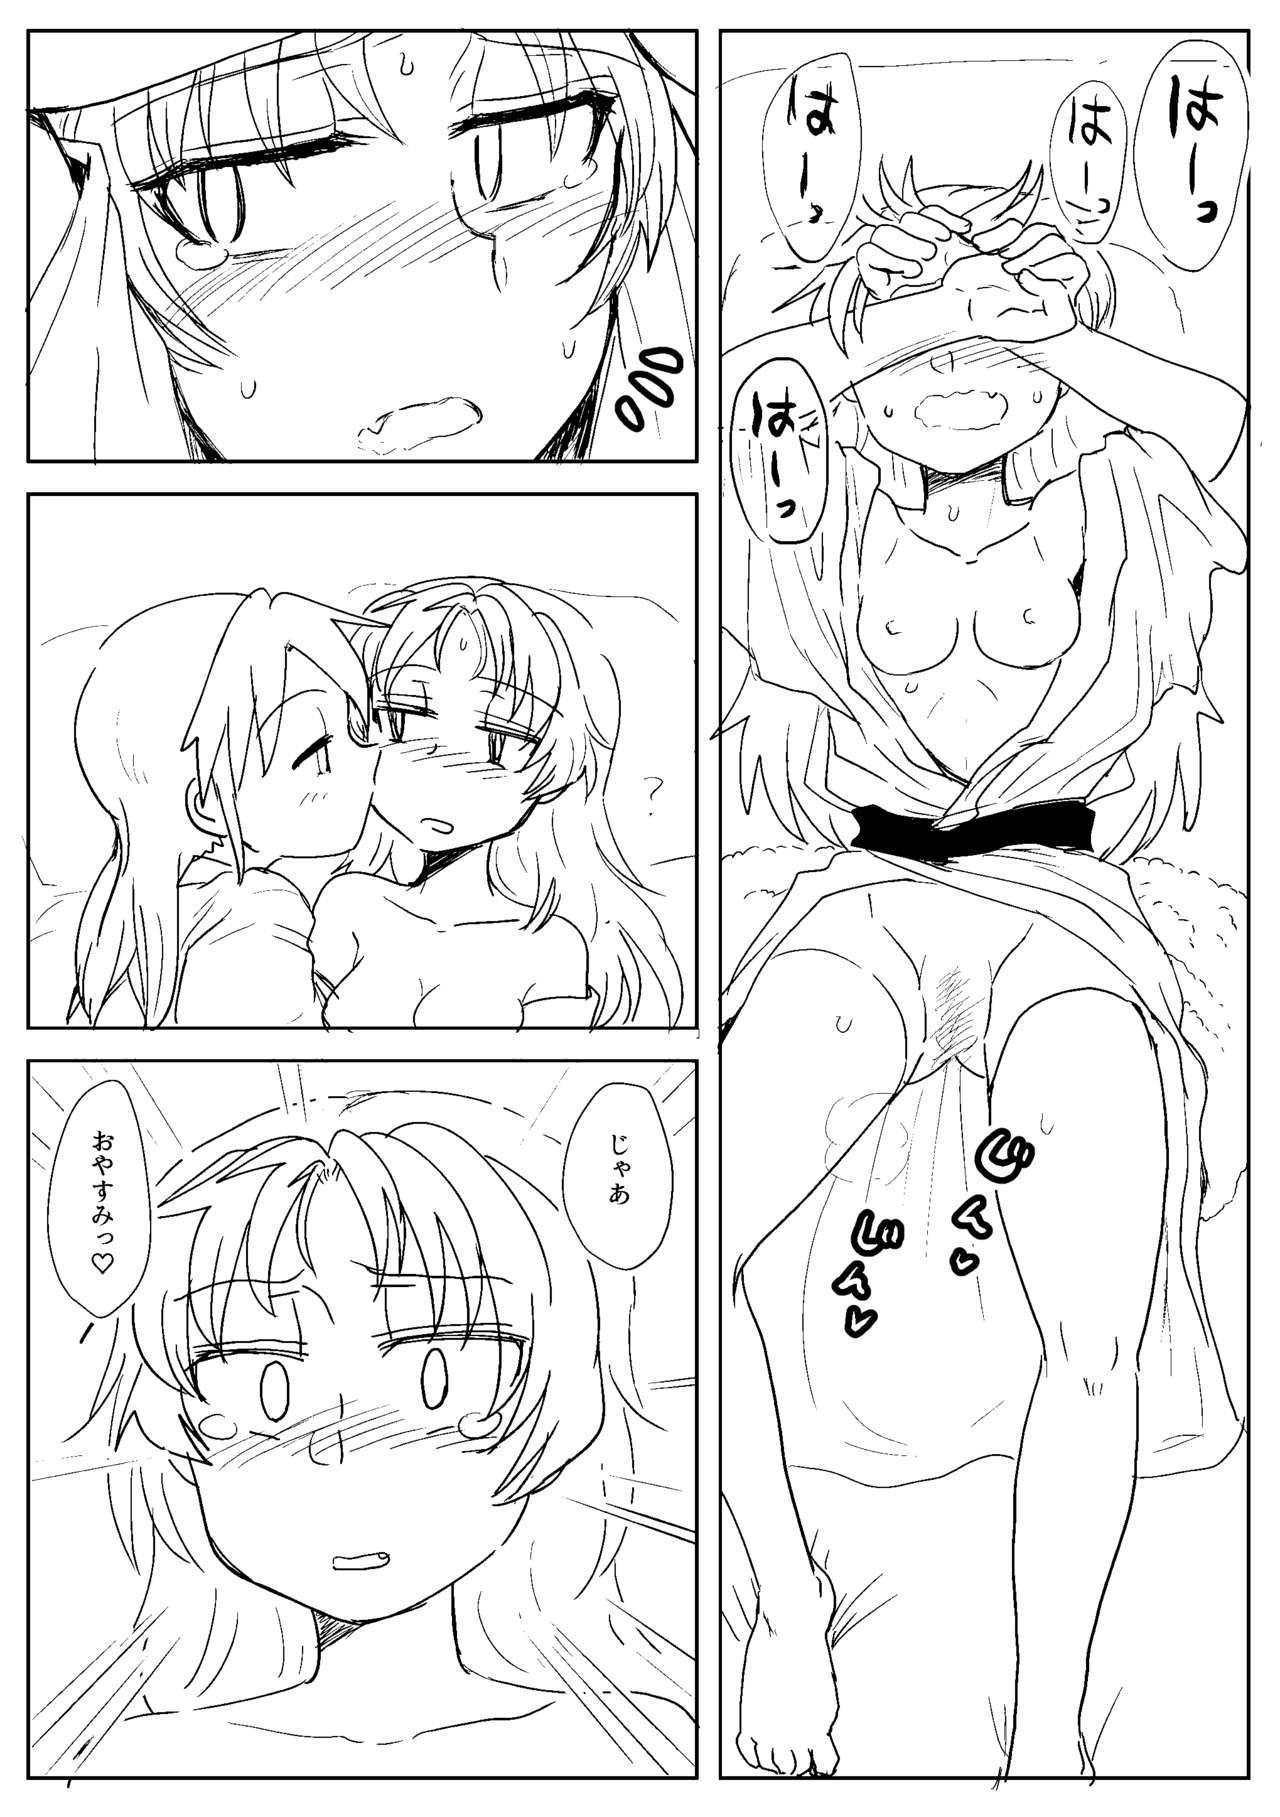 Sex Sawaranai Kaname VS Sakura-san - Puella magi madoka magica Game - Page 6